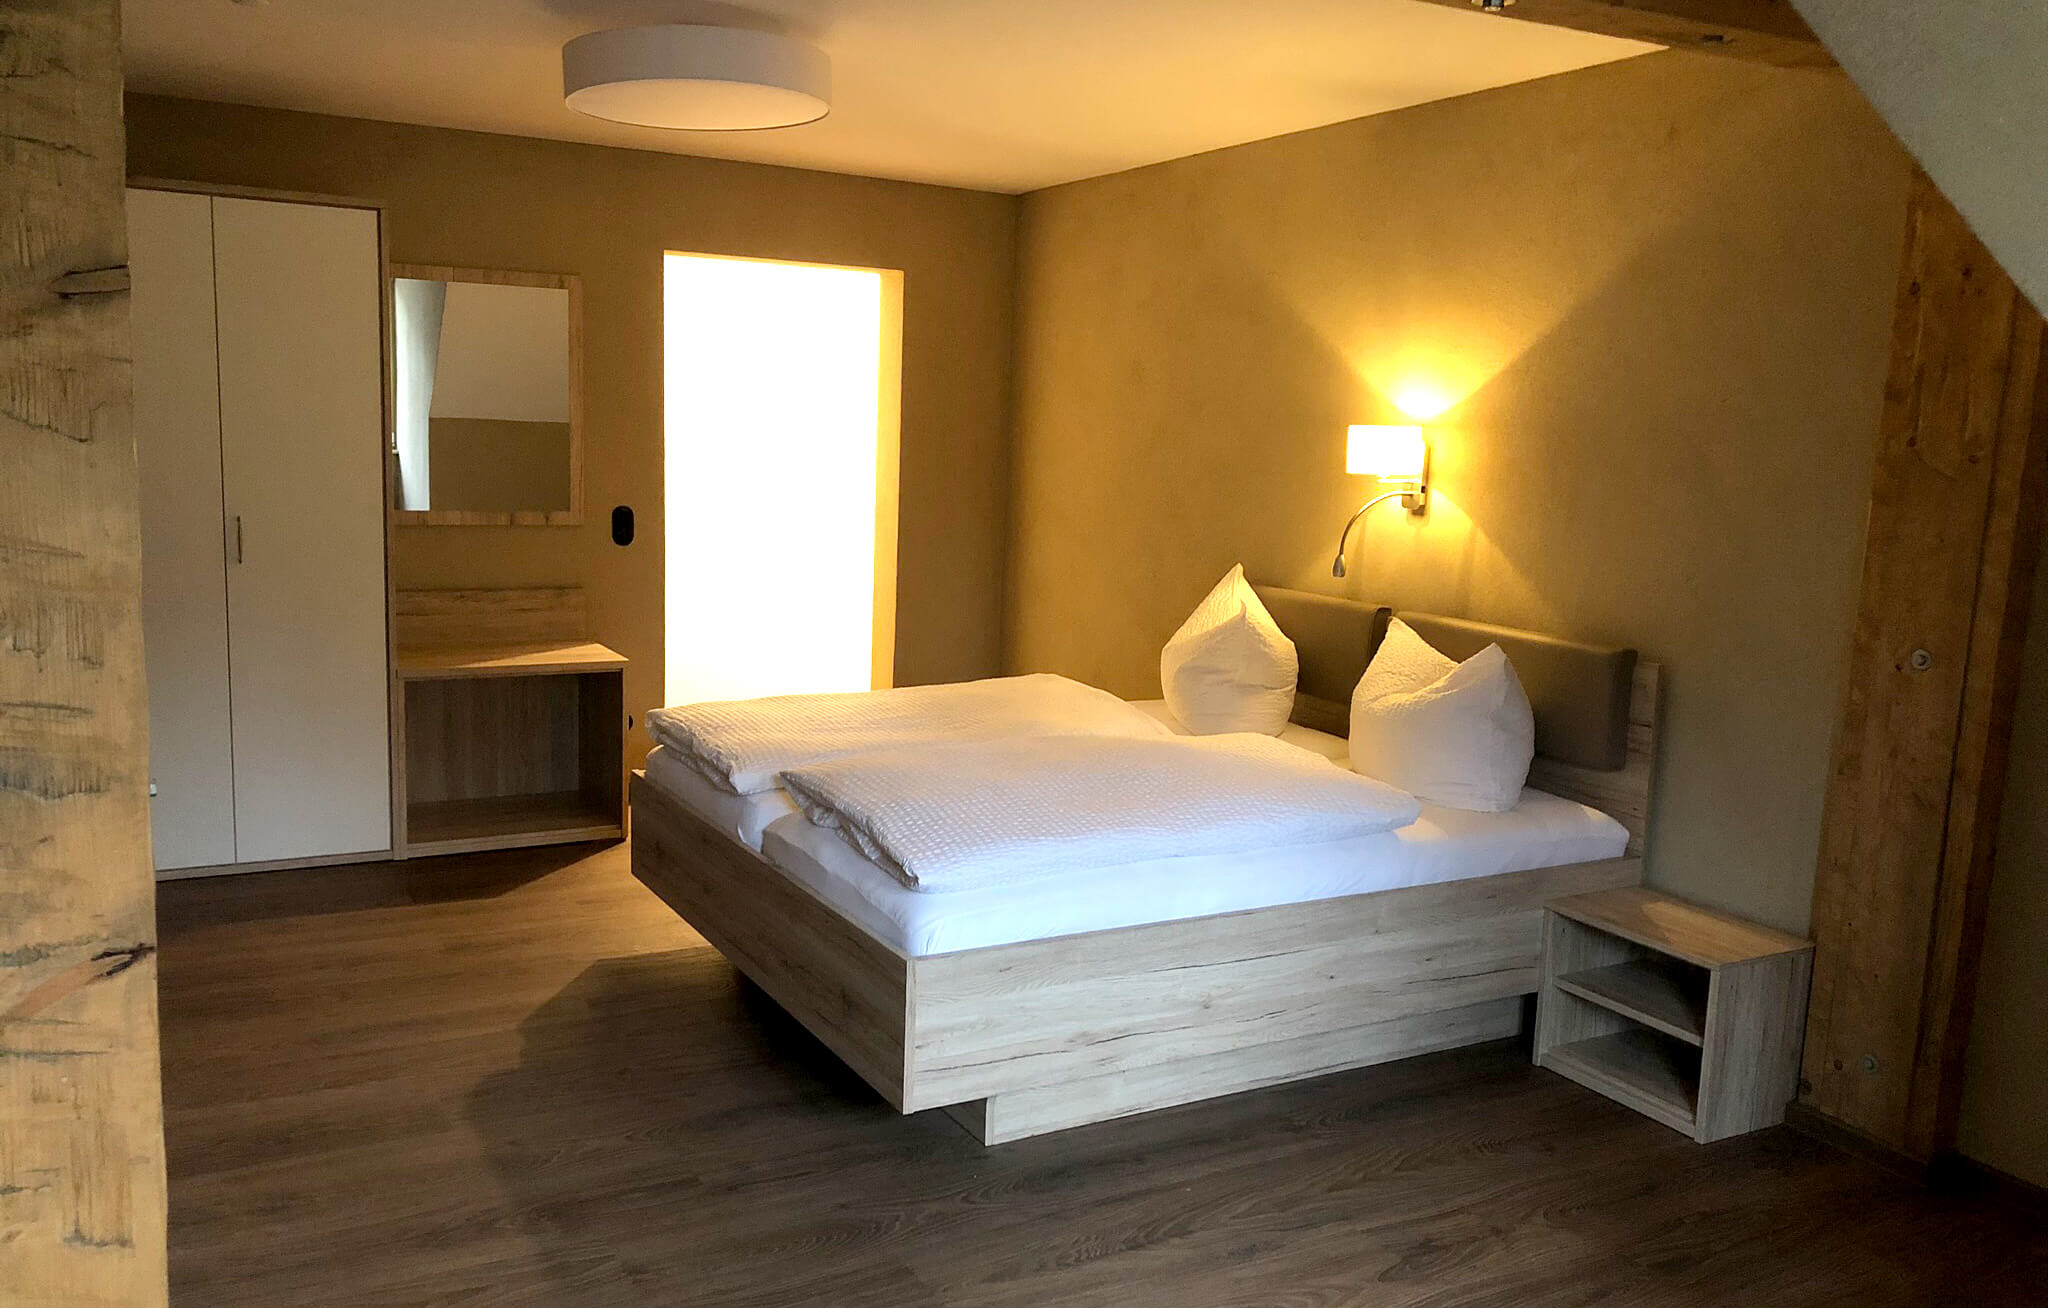 Hotelzimmer mit großem Doppelbett und Einbauschrank. Über dem Bett hängt eine Wandleuchte und hüllt das bett in ein warmes Licht.